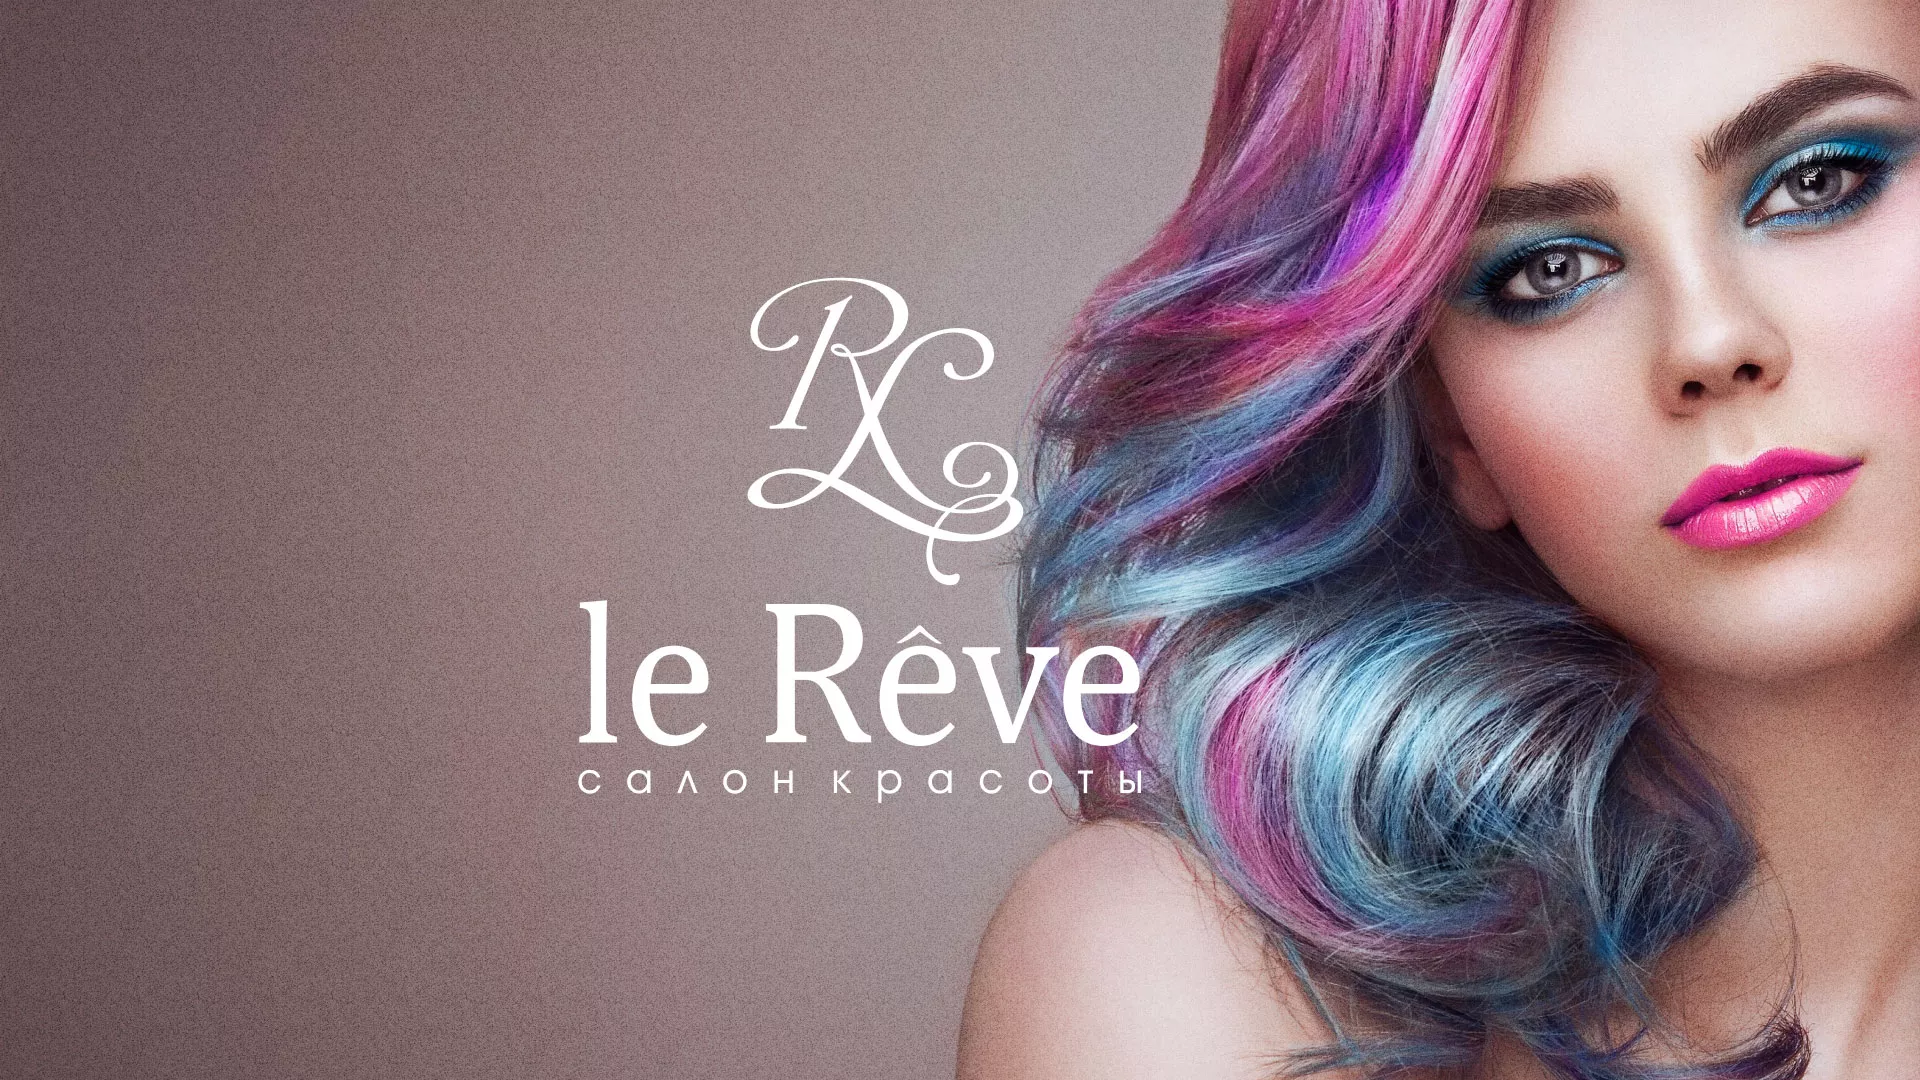 Создание сайта для салона красоты «Le Reve» в Новопавловске